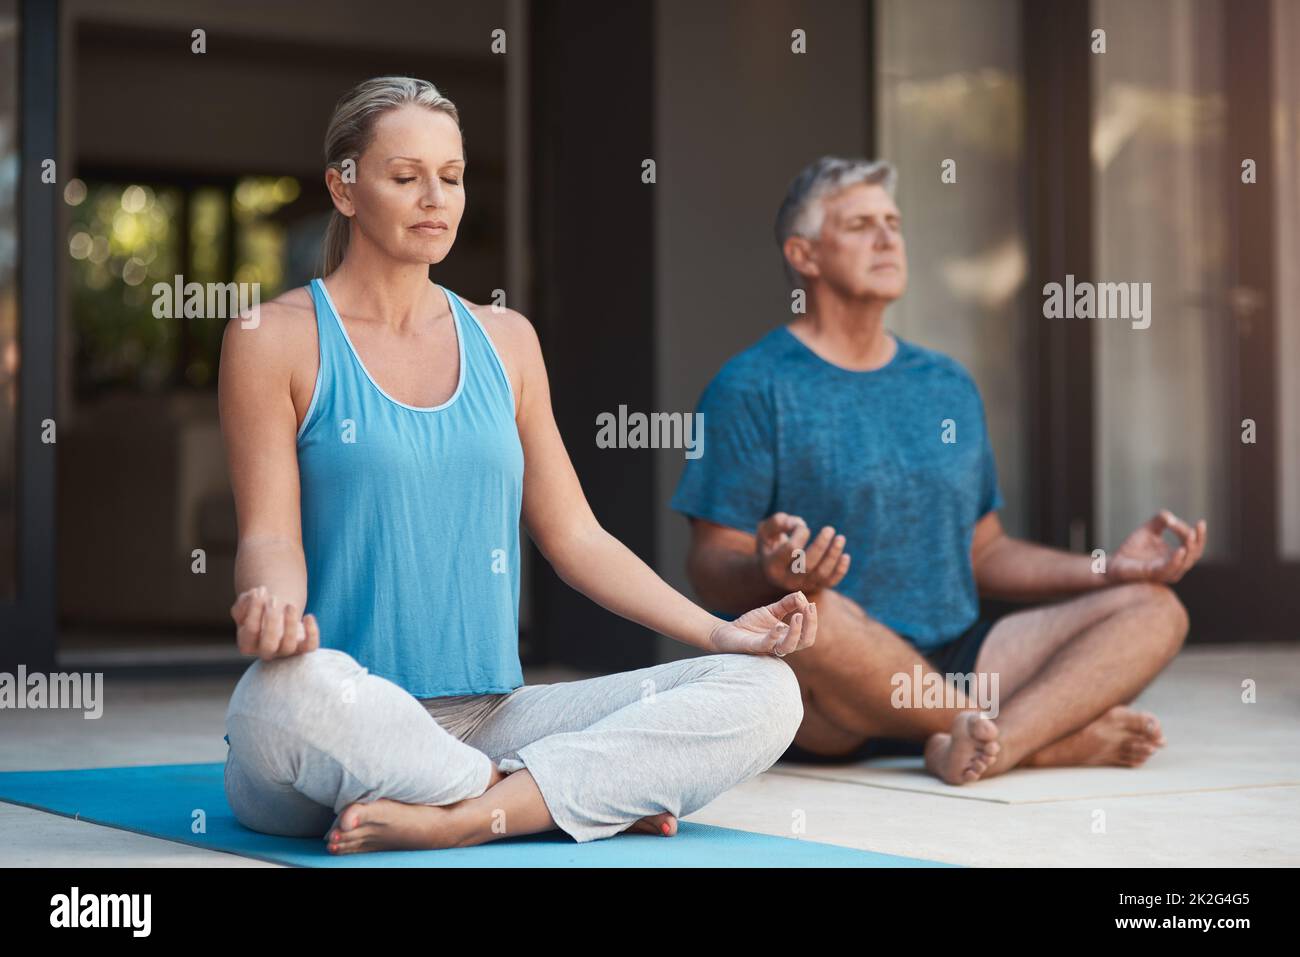 Frieden kommt in sich. Aufnahme eines reifen Paares, das sich ruhig mit gekreuzten Beinen in eine Yoga-Pose einstellt. Stockfoto